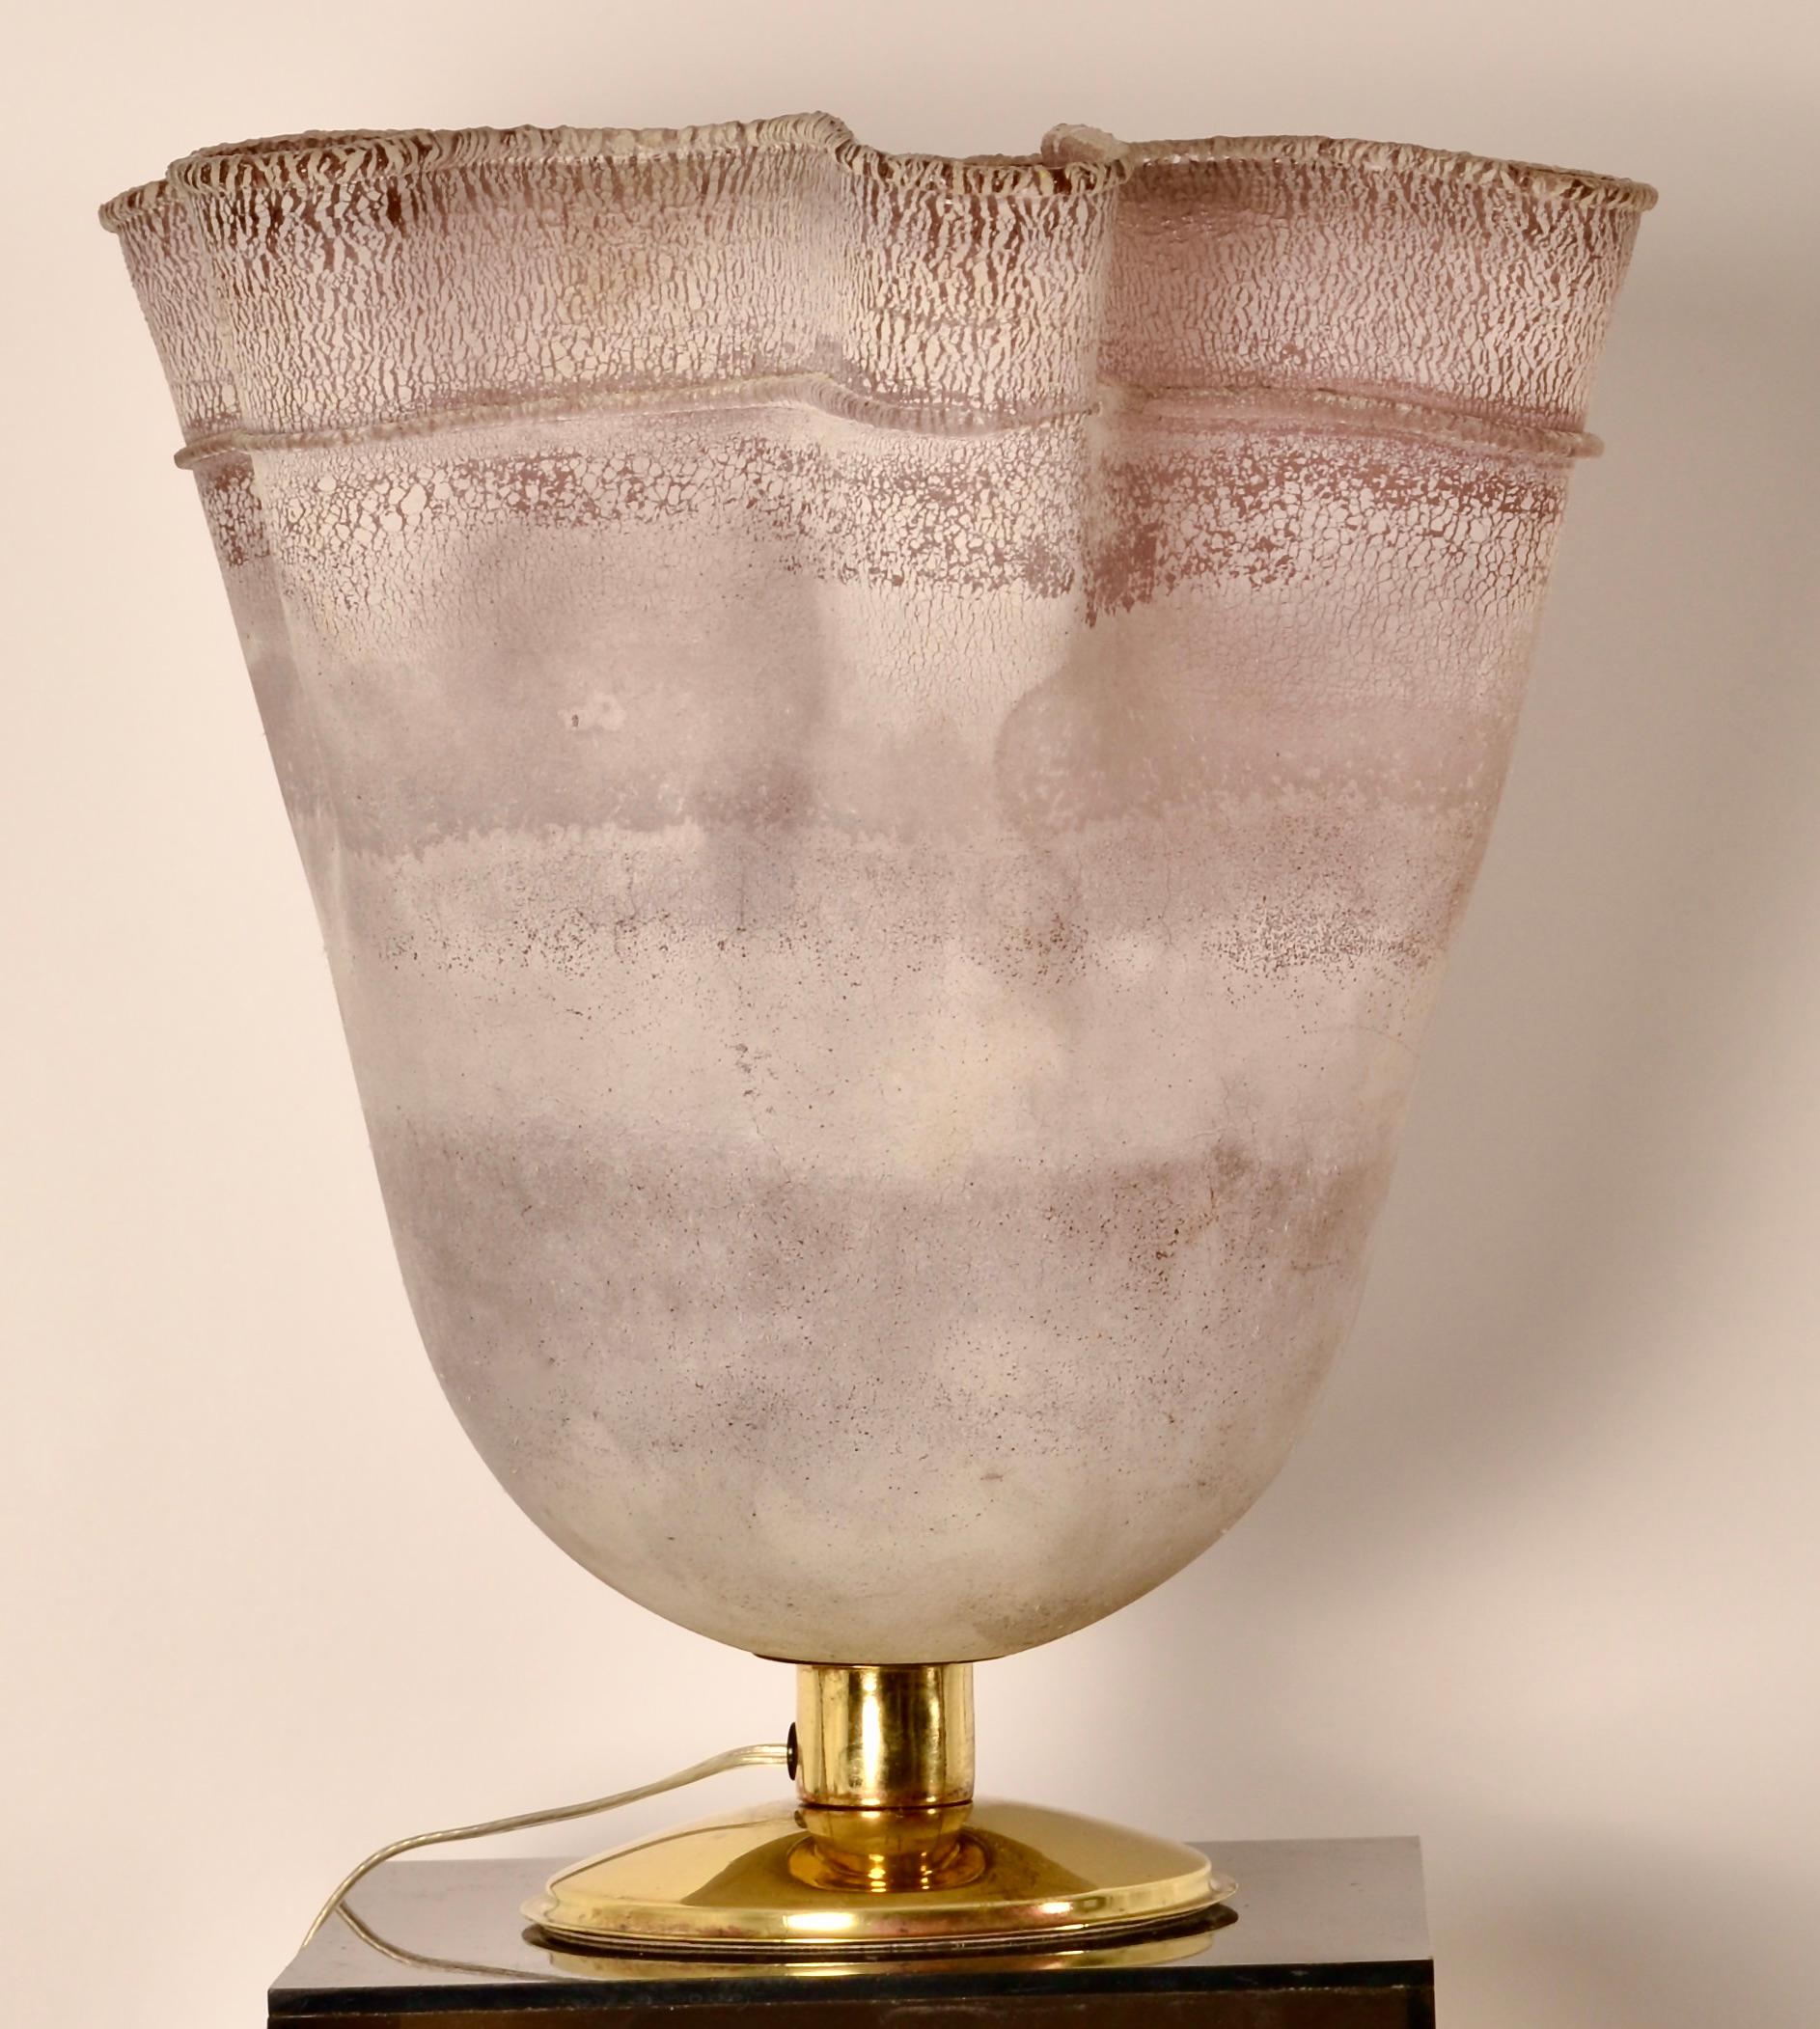 Lampe de table de forme organique inhabituelle en verre soufflé à la main avec une finition en échelle Barbini. Magnifique verre de couleur lilas chaud. Base en laiton poli. Câblage mis à jour. Très bon état.